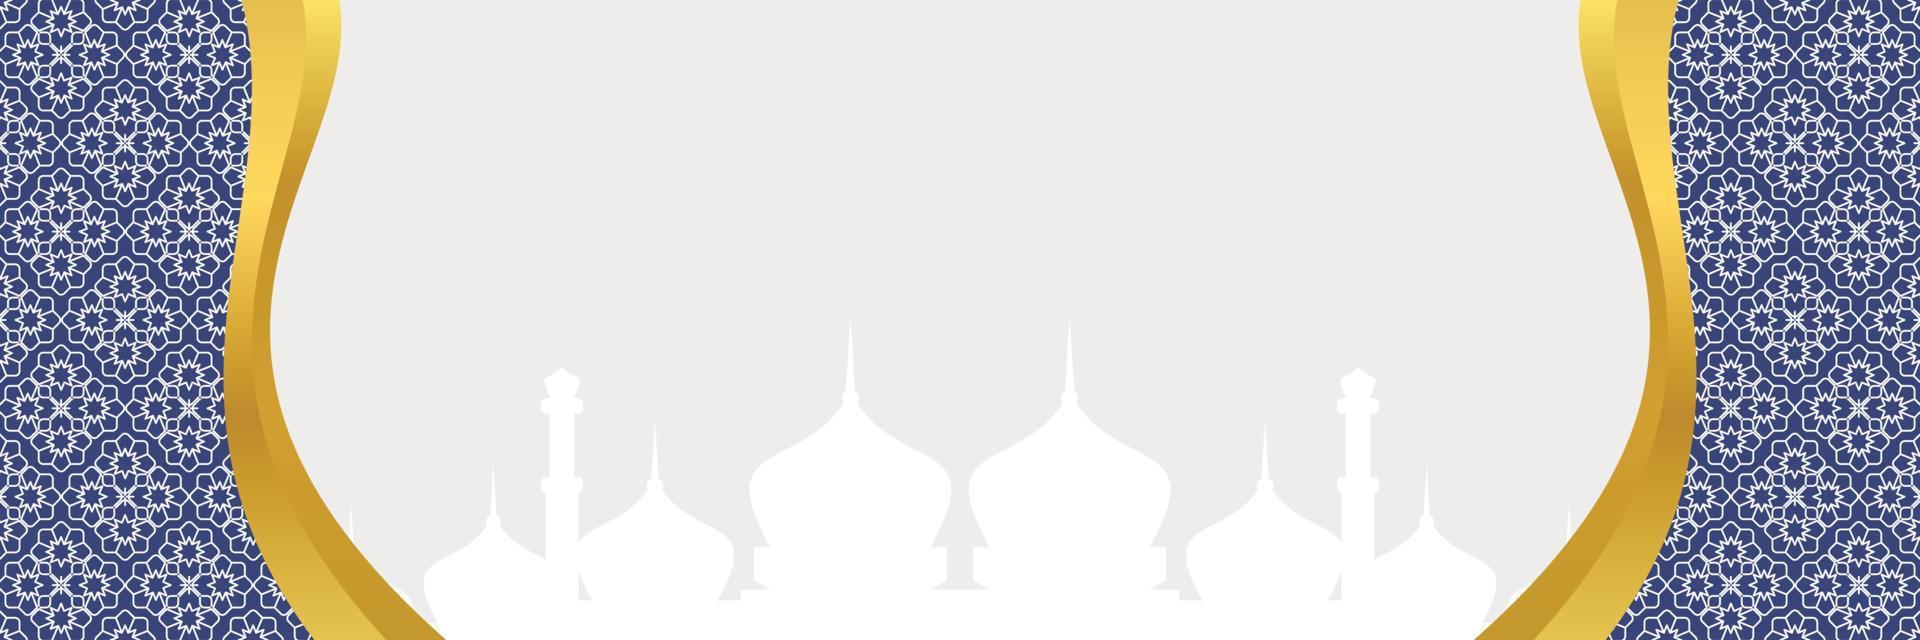 islamic bakgrund, med mandala prydnad och moské silhuett. vektor mall för banderoller, hälsning kort för islamic högtider, eid al fitr, ramadhan, eid al Adha